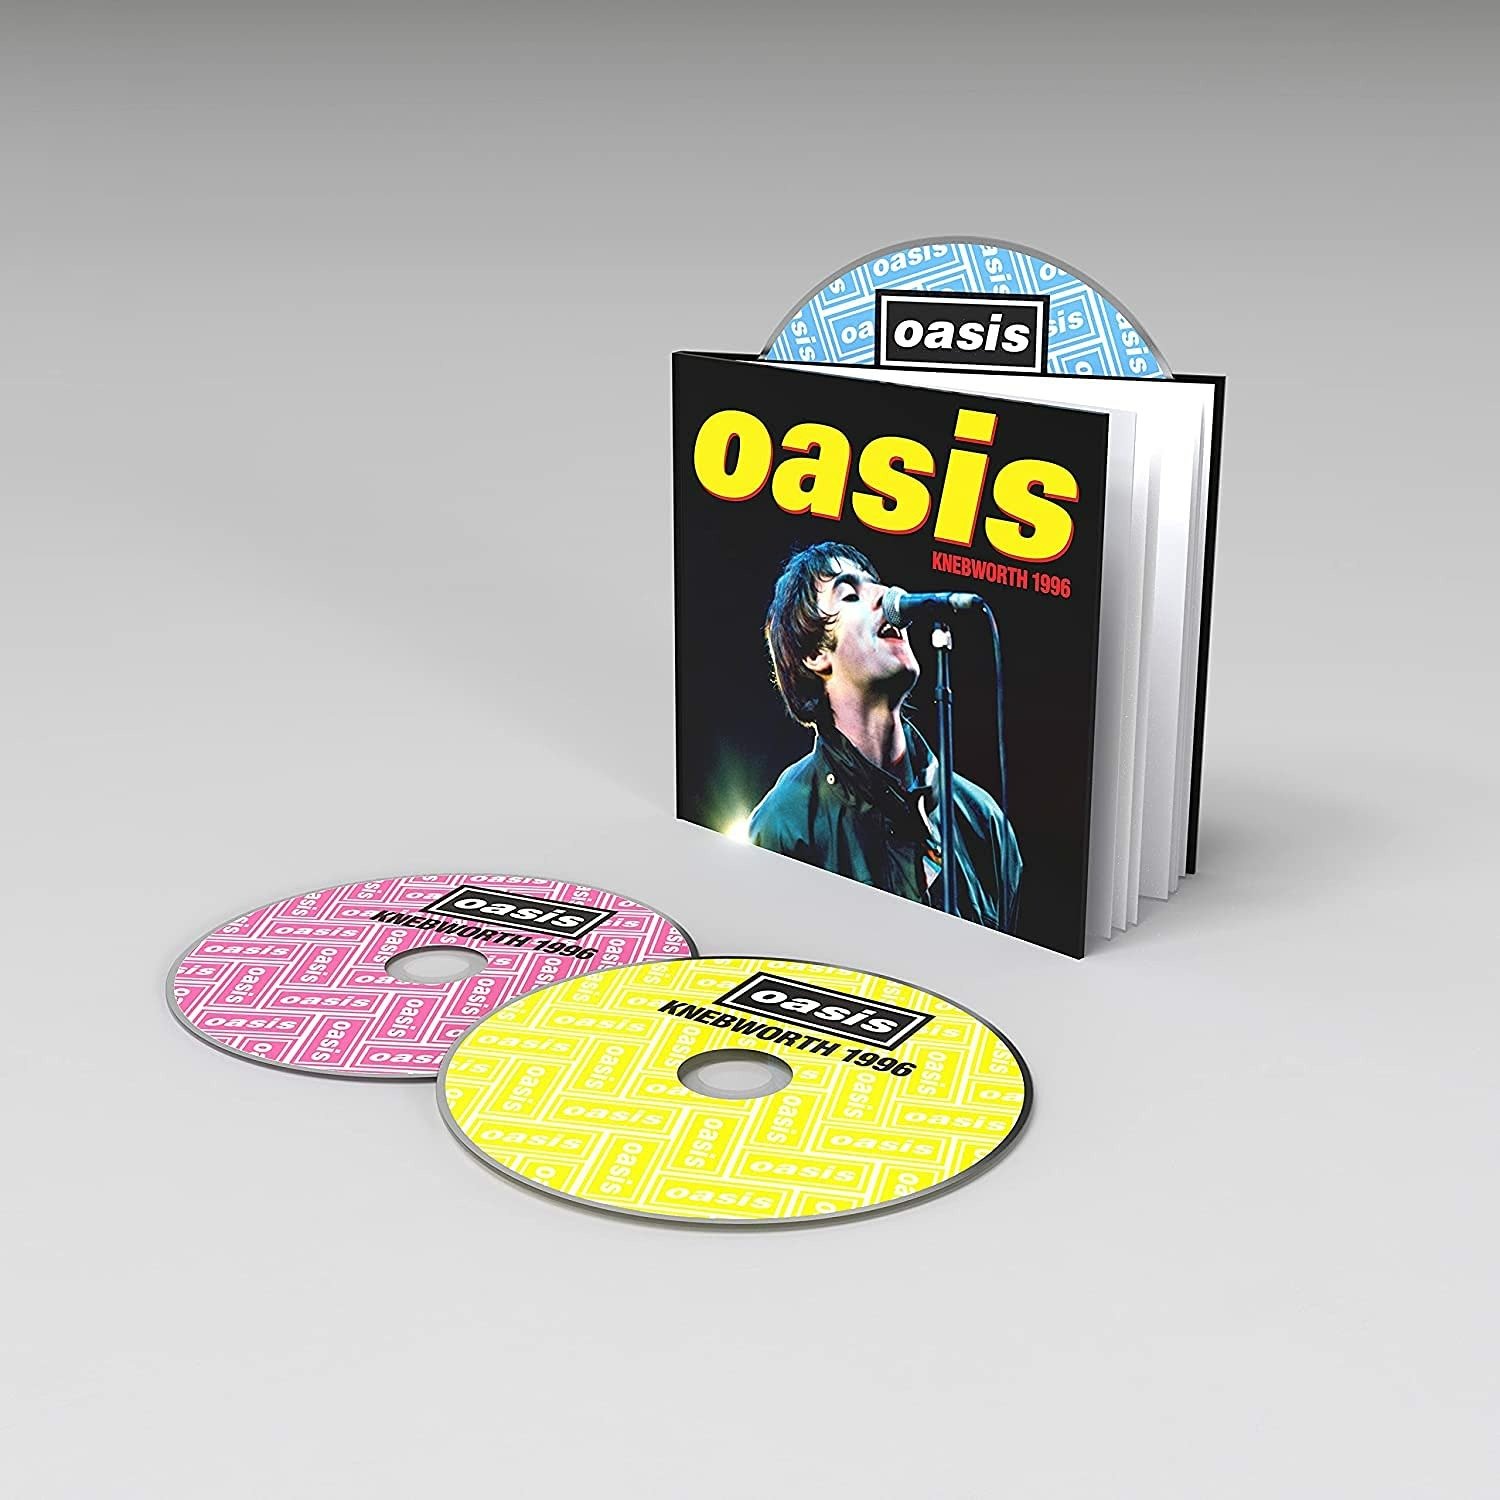 CD Shop - OASIS Oasis Knebworth 1996